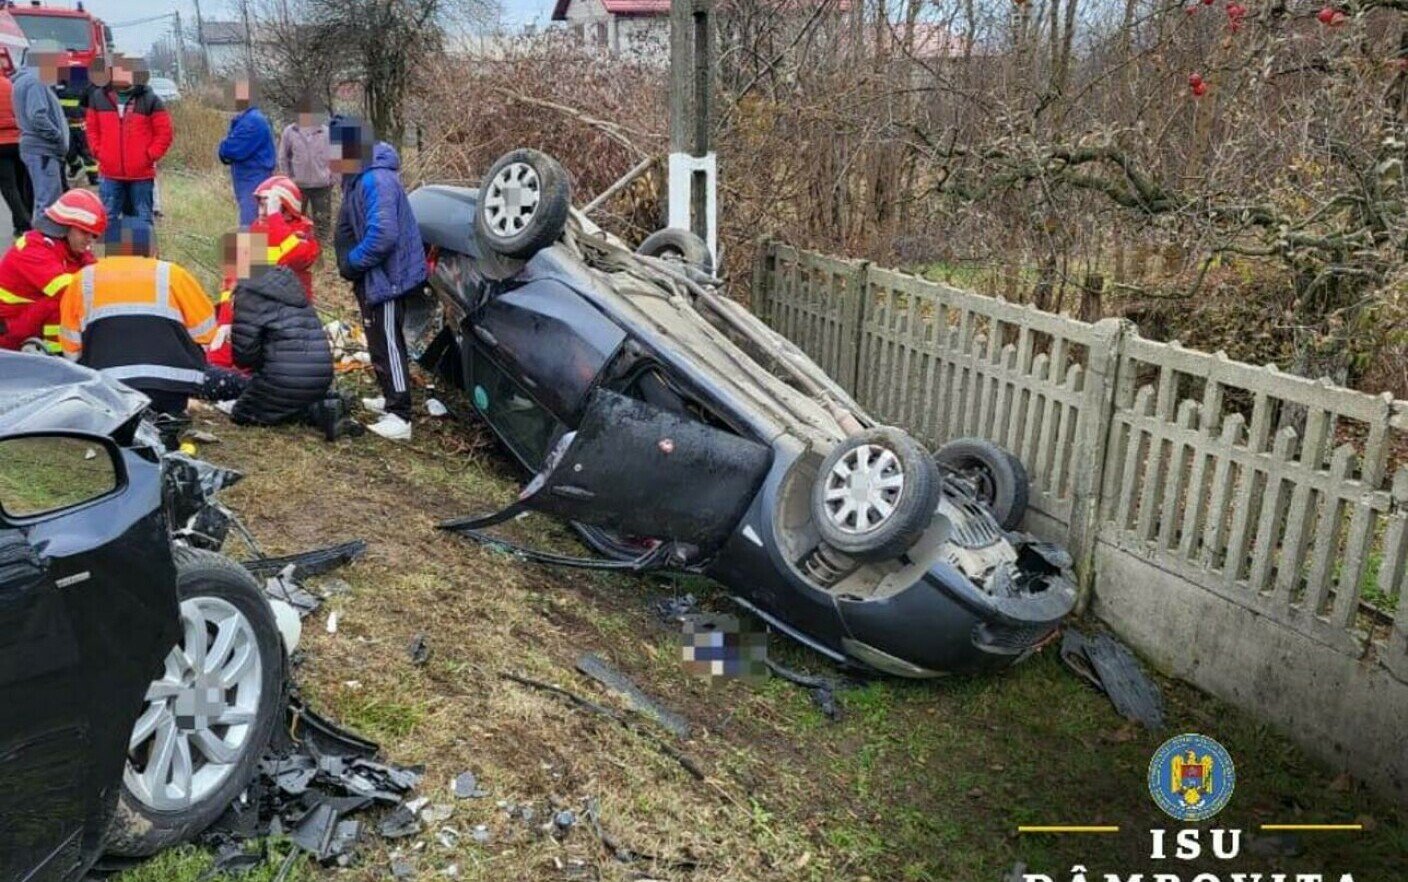  Dublă tragedie în Dâmbovița. tată și fiică morți în urma unui accident auto